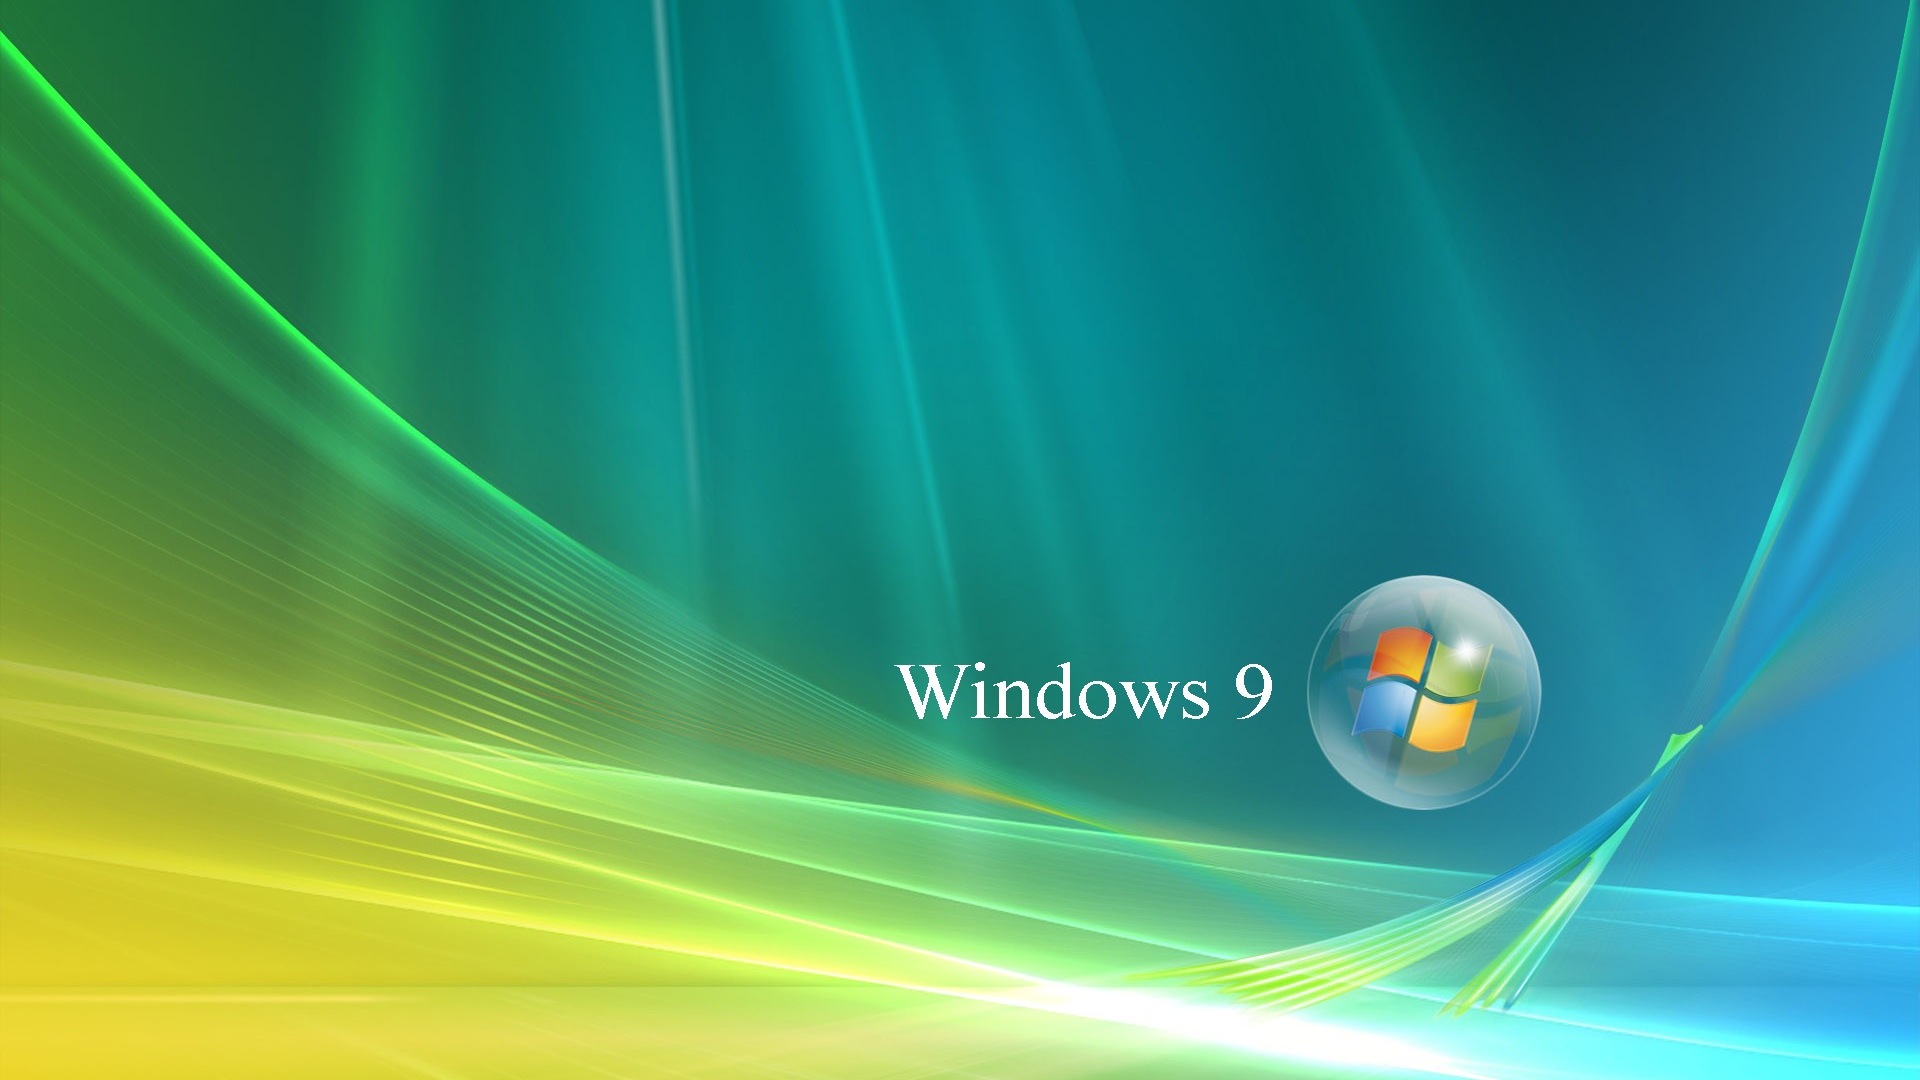 微软 Windows 9 系统主题 高清壁纸20 - 1920x1080